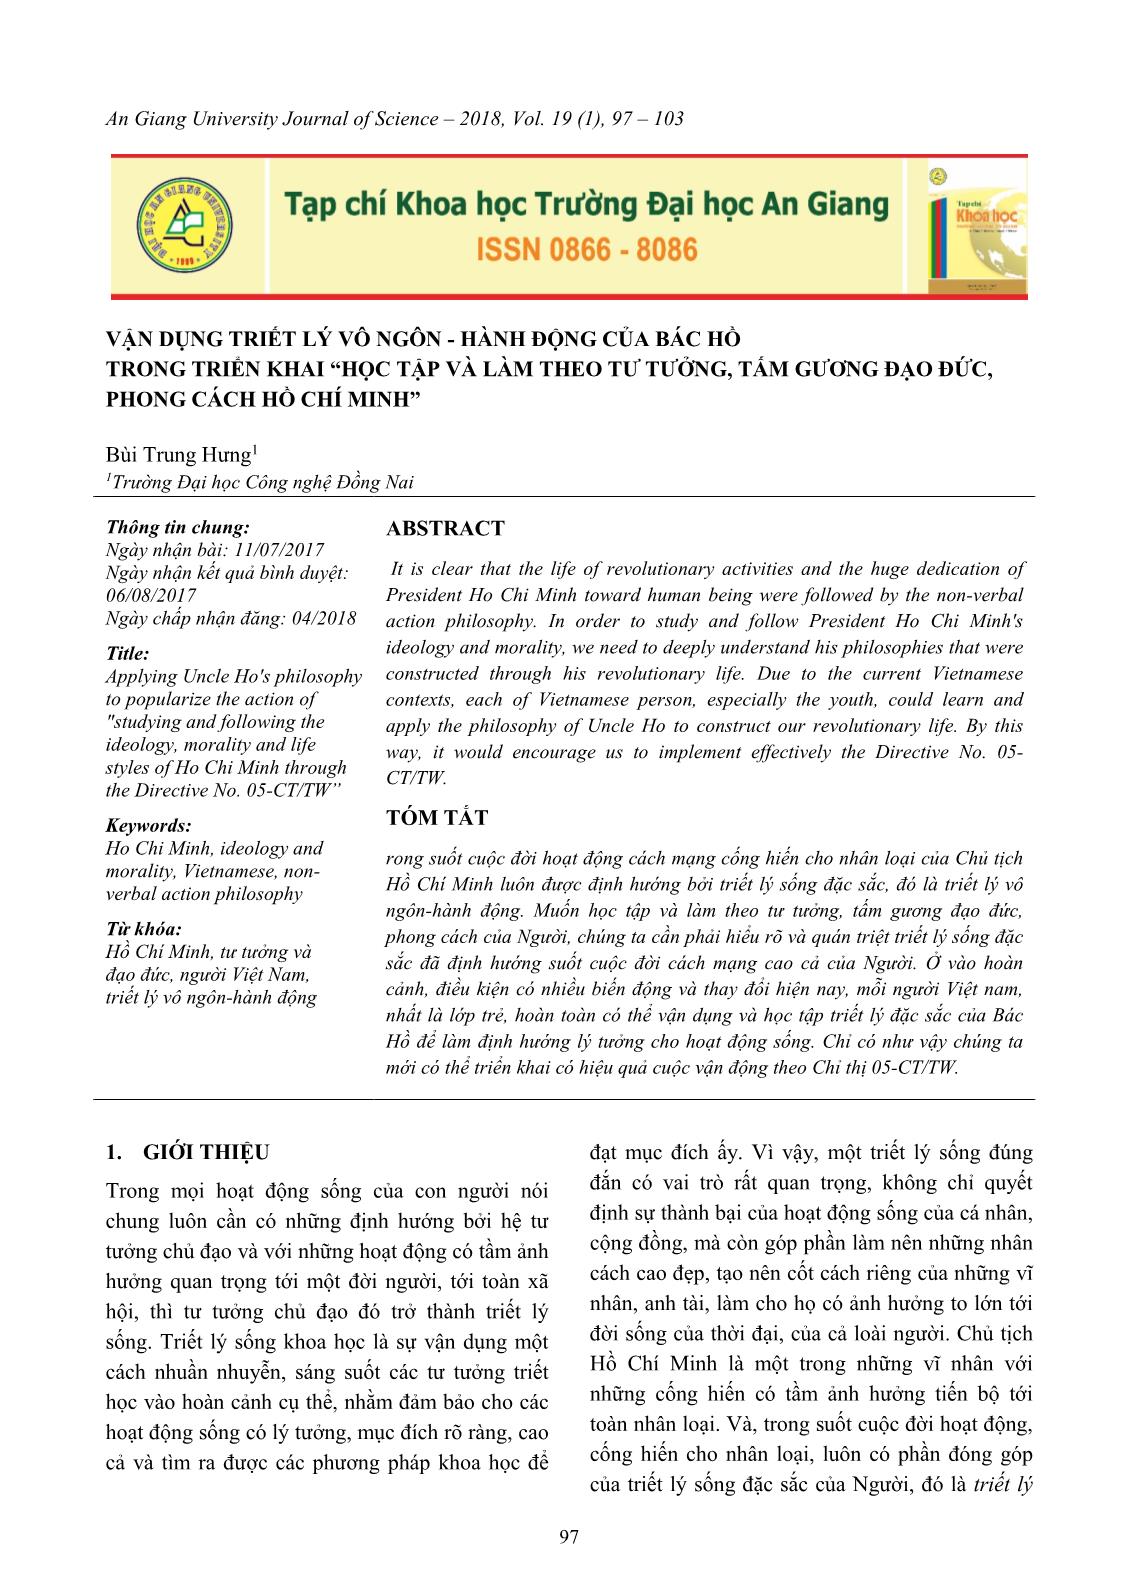 Vận dụng triết lý vô ngôn - Hành động của Bác Hồ trong triển khai “Học tập và làm theo tư tưởng, tấm gương đạo đức, phong cách Hồ Chí Minh” trang 1